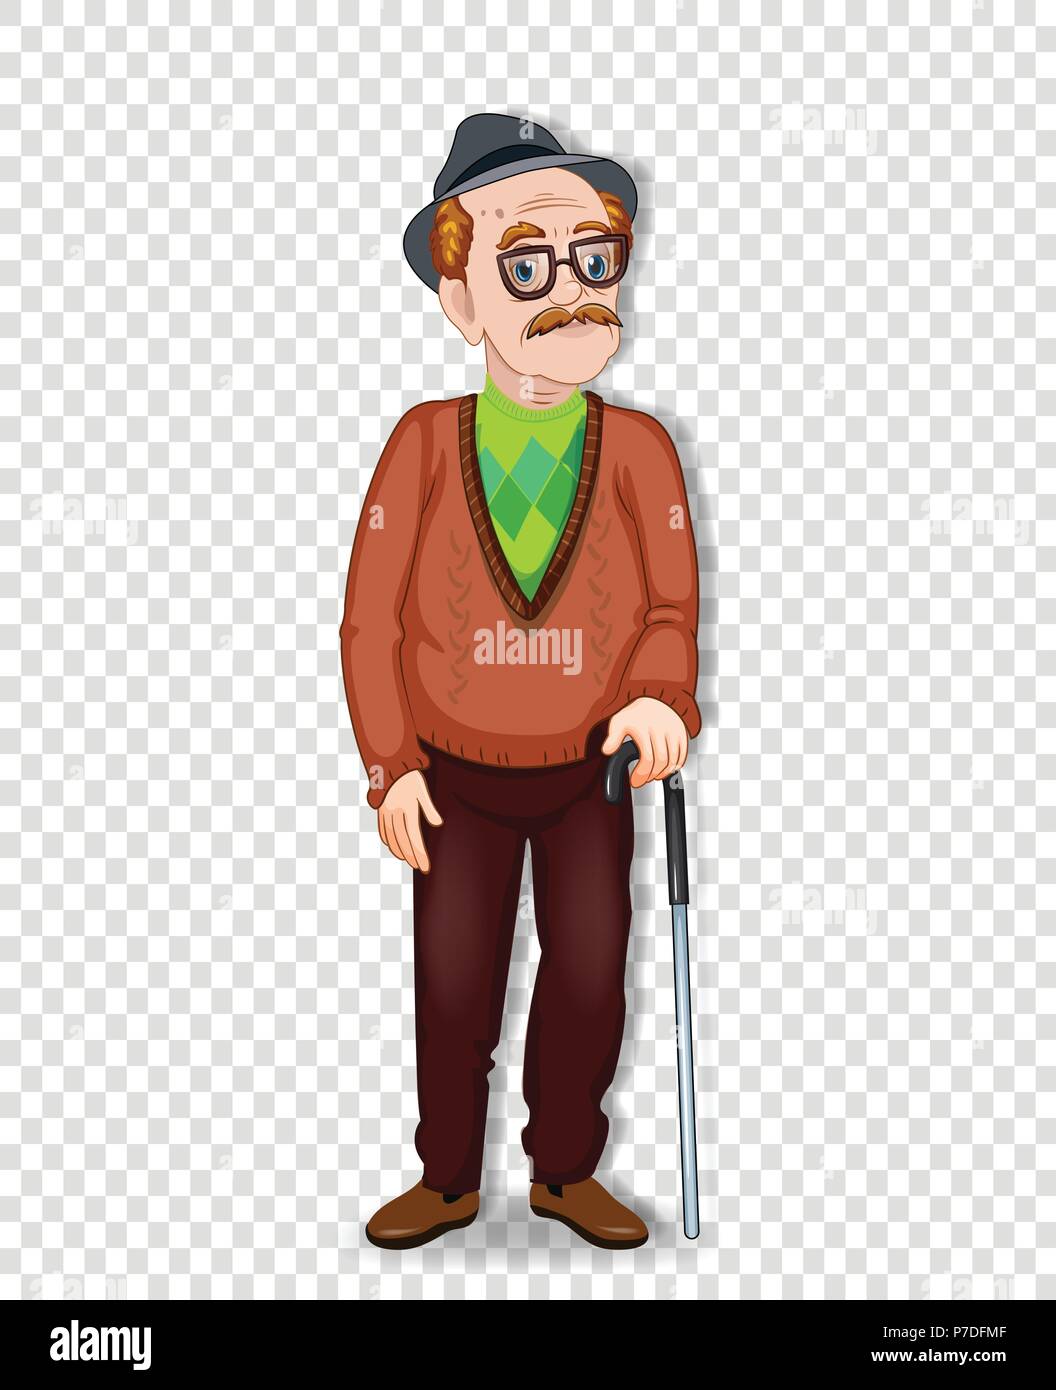 Vektor Cartoon Illustration eines alten Mannes Charakter. Ein älterer Mann in voller Länge mit Brille und Spazierstock zu tragen hat auf Transparenten zurück isoliert Stock Vektor